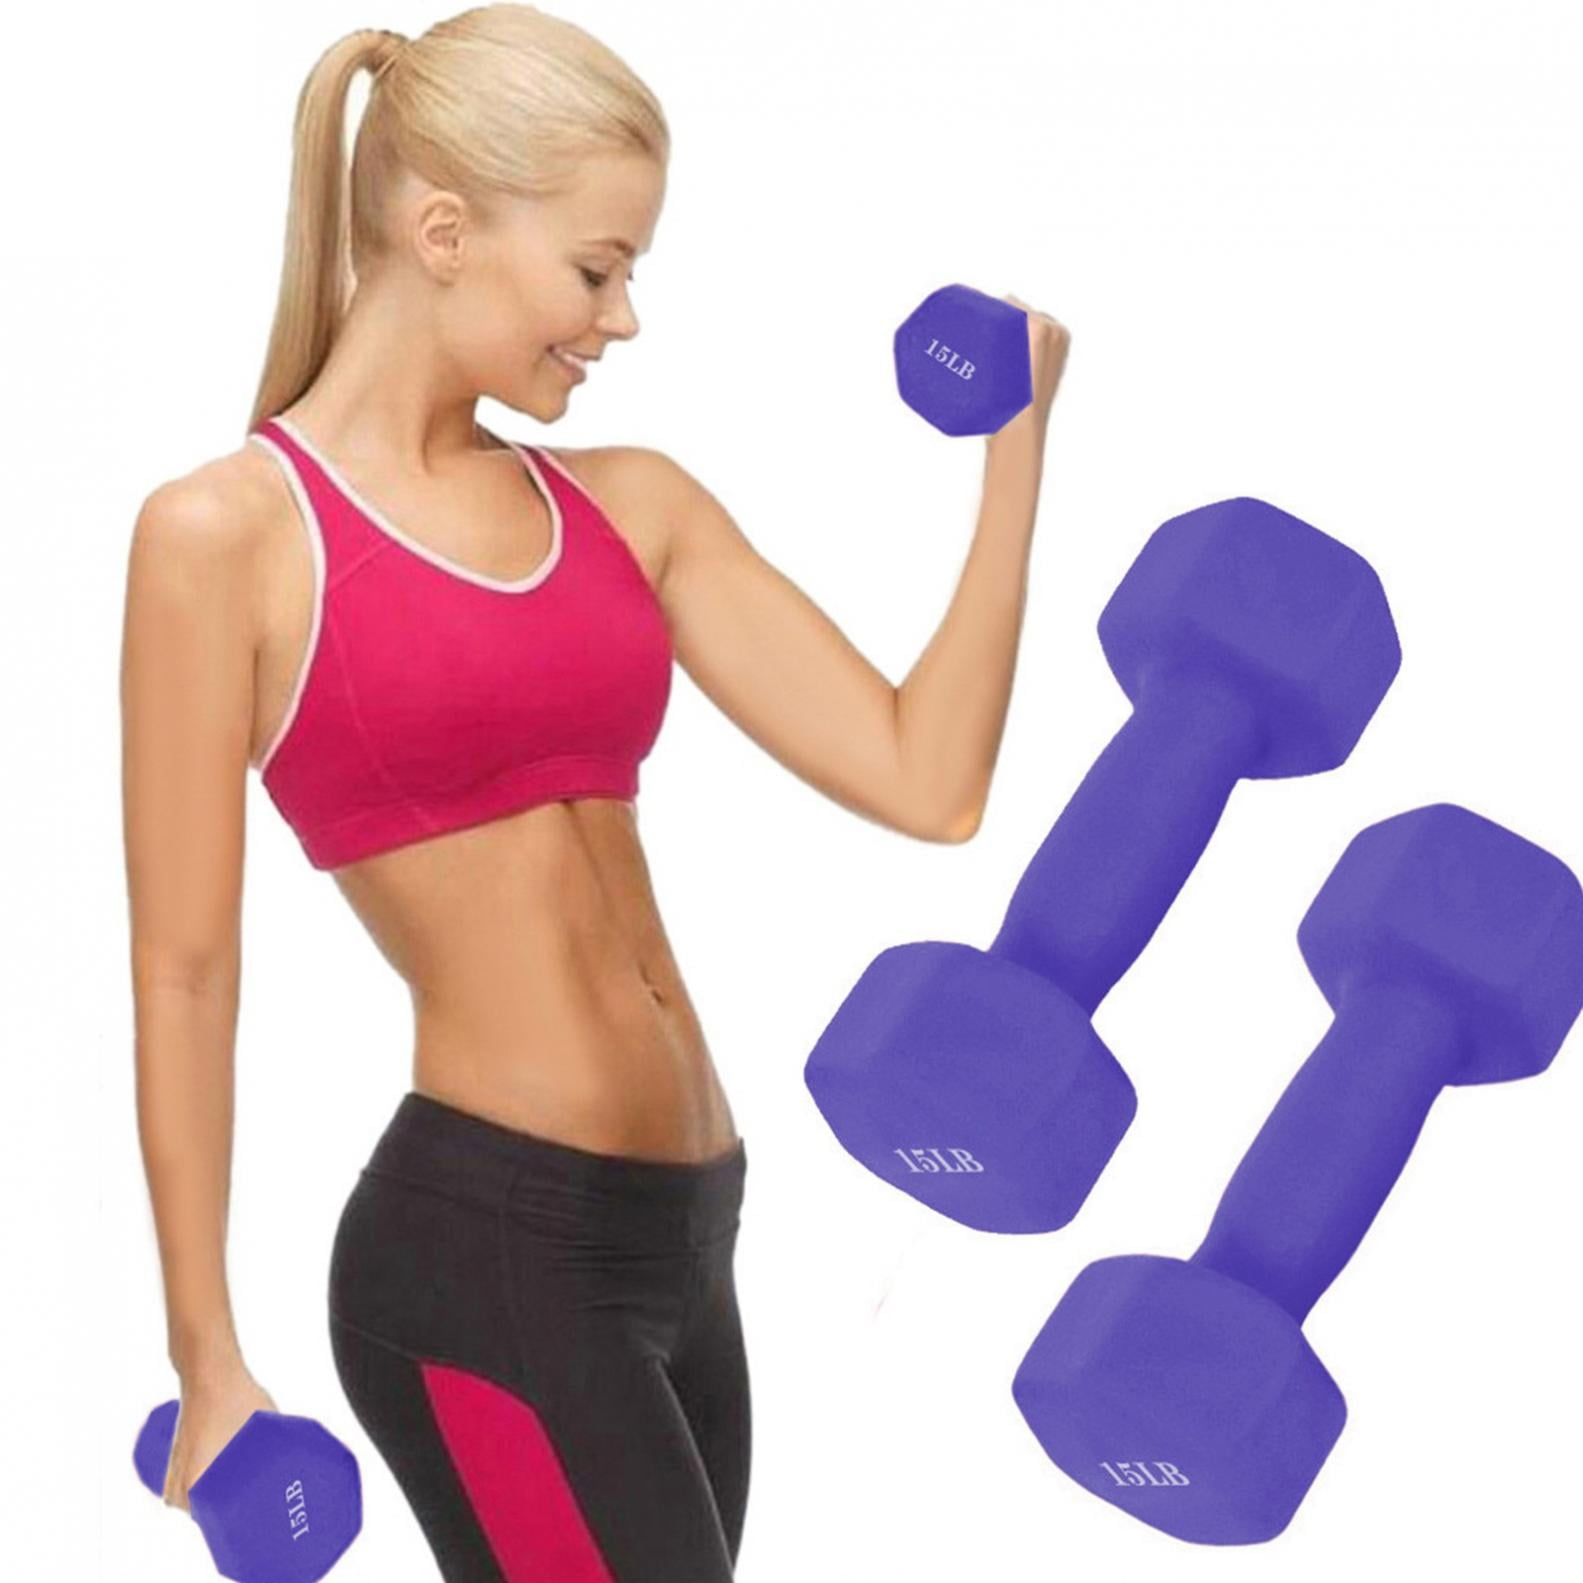 Body Sport Vinyl Dumbbell Hand Weight Dumbbells for Exercises Strength 